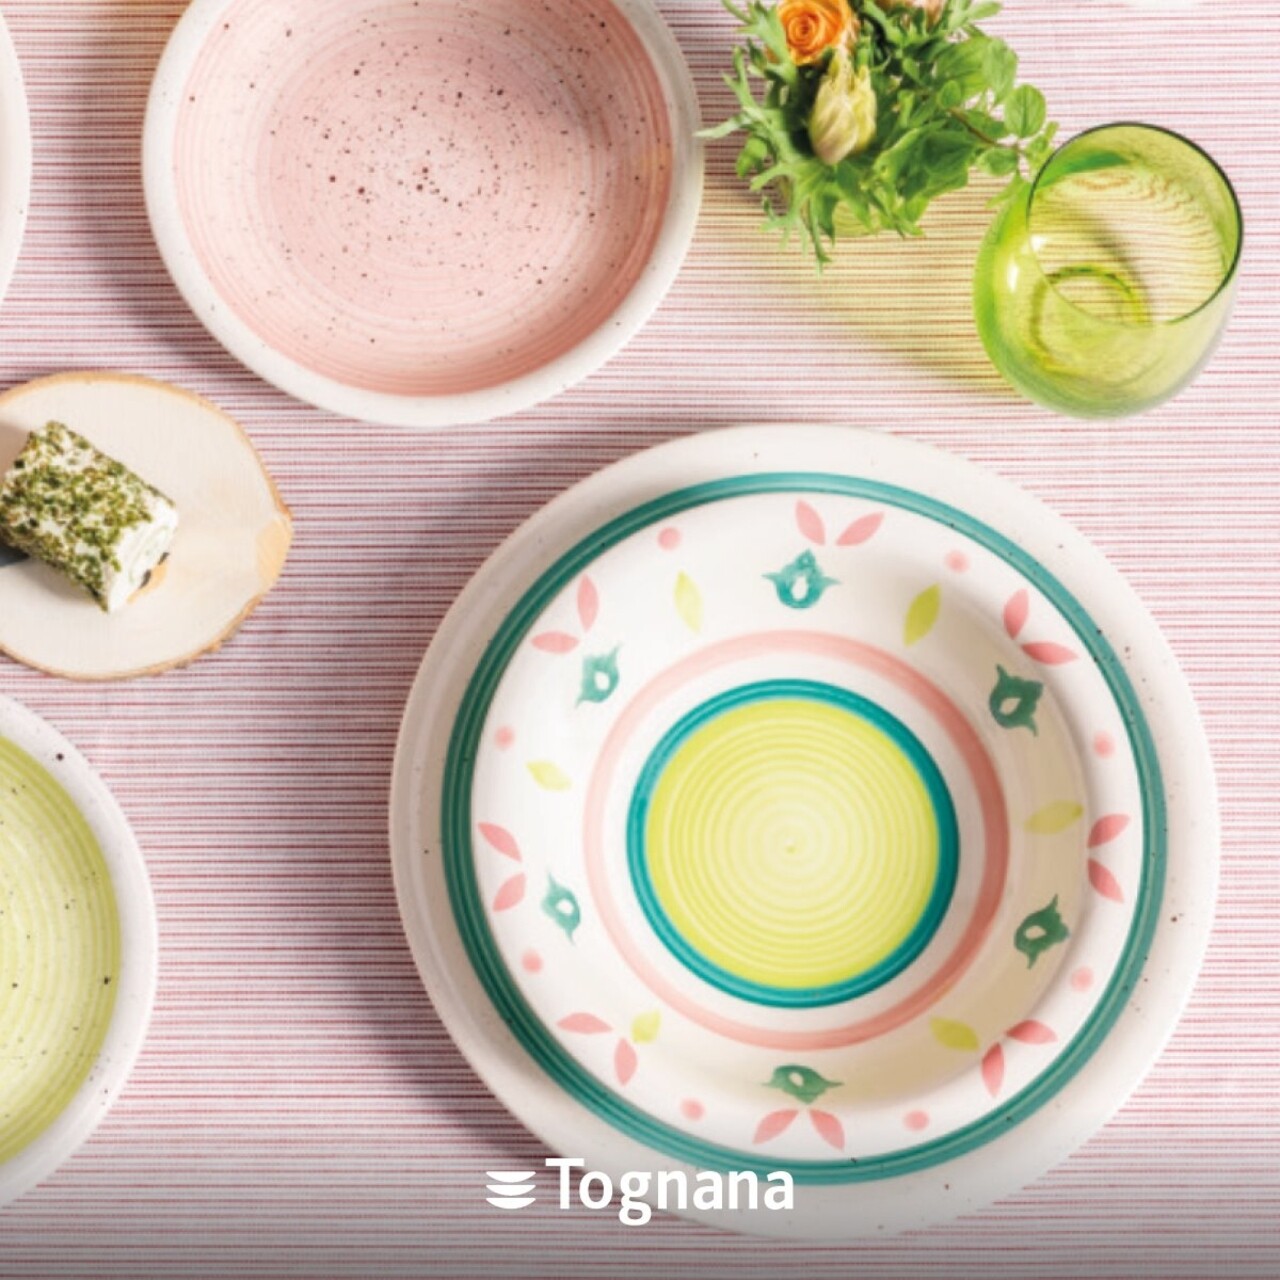 Tognana porcellane 18 részes étkészlet, tognana, louise blossom, mázas kerámia, sokszínű